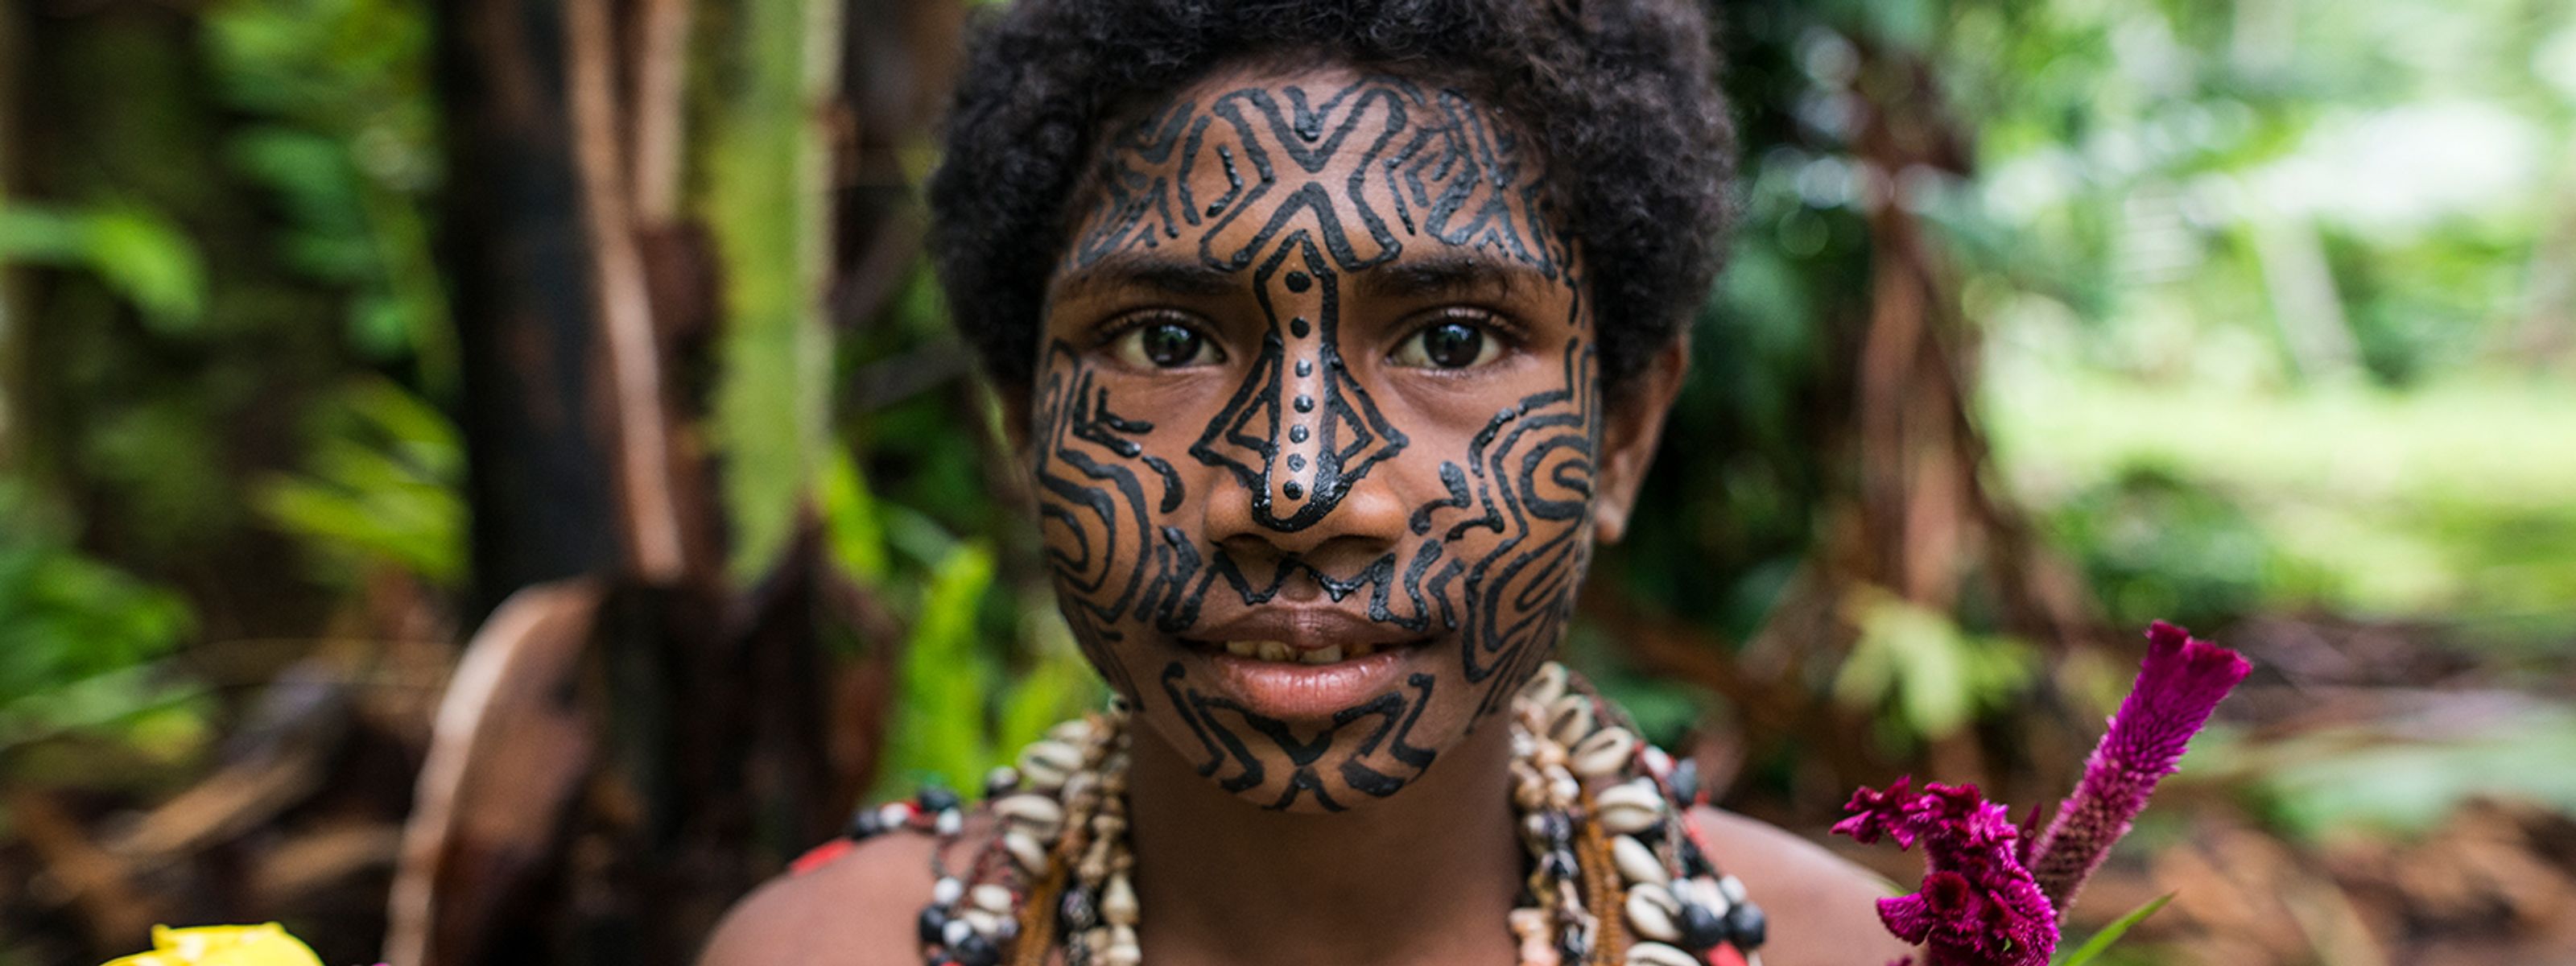 Indigenes Mädchen in Papua-Neuguinea